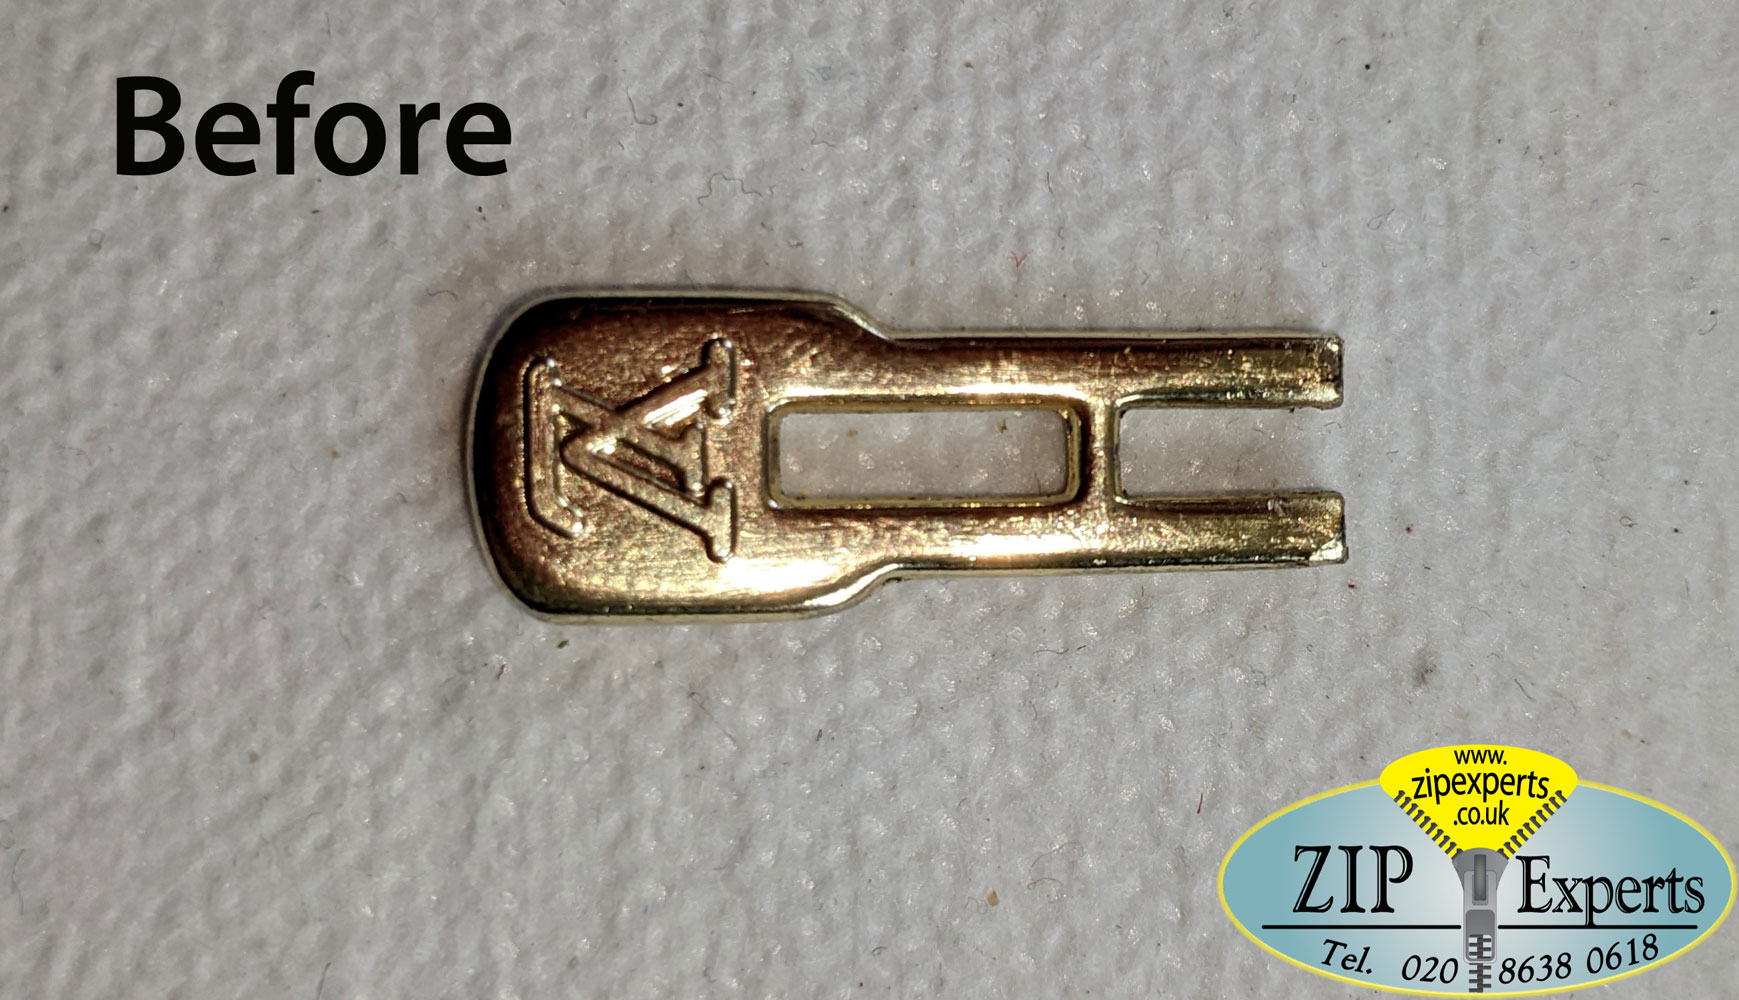 LOUIS VUITTON zip pull repaired – Zip Experts